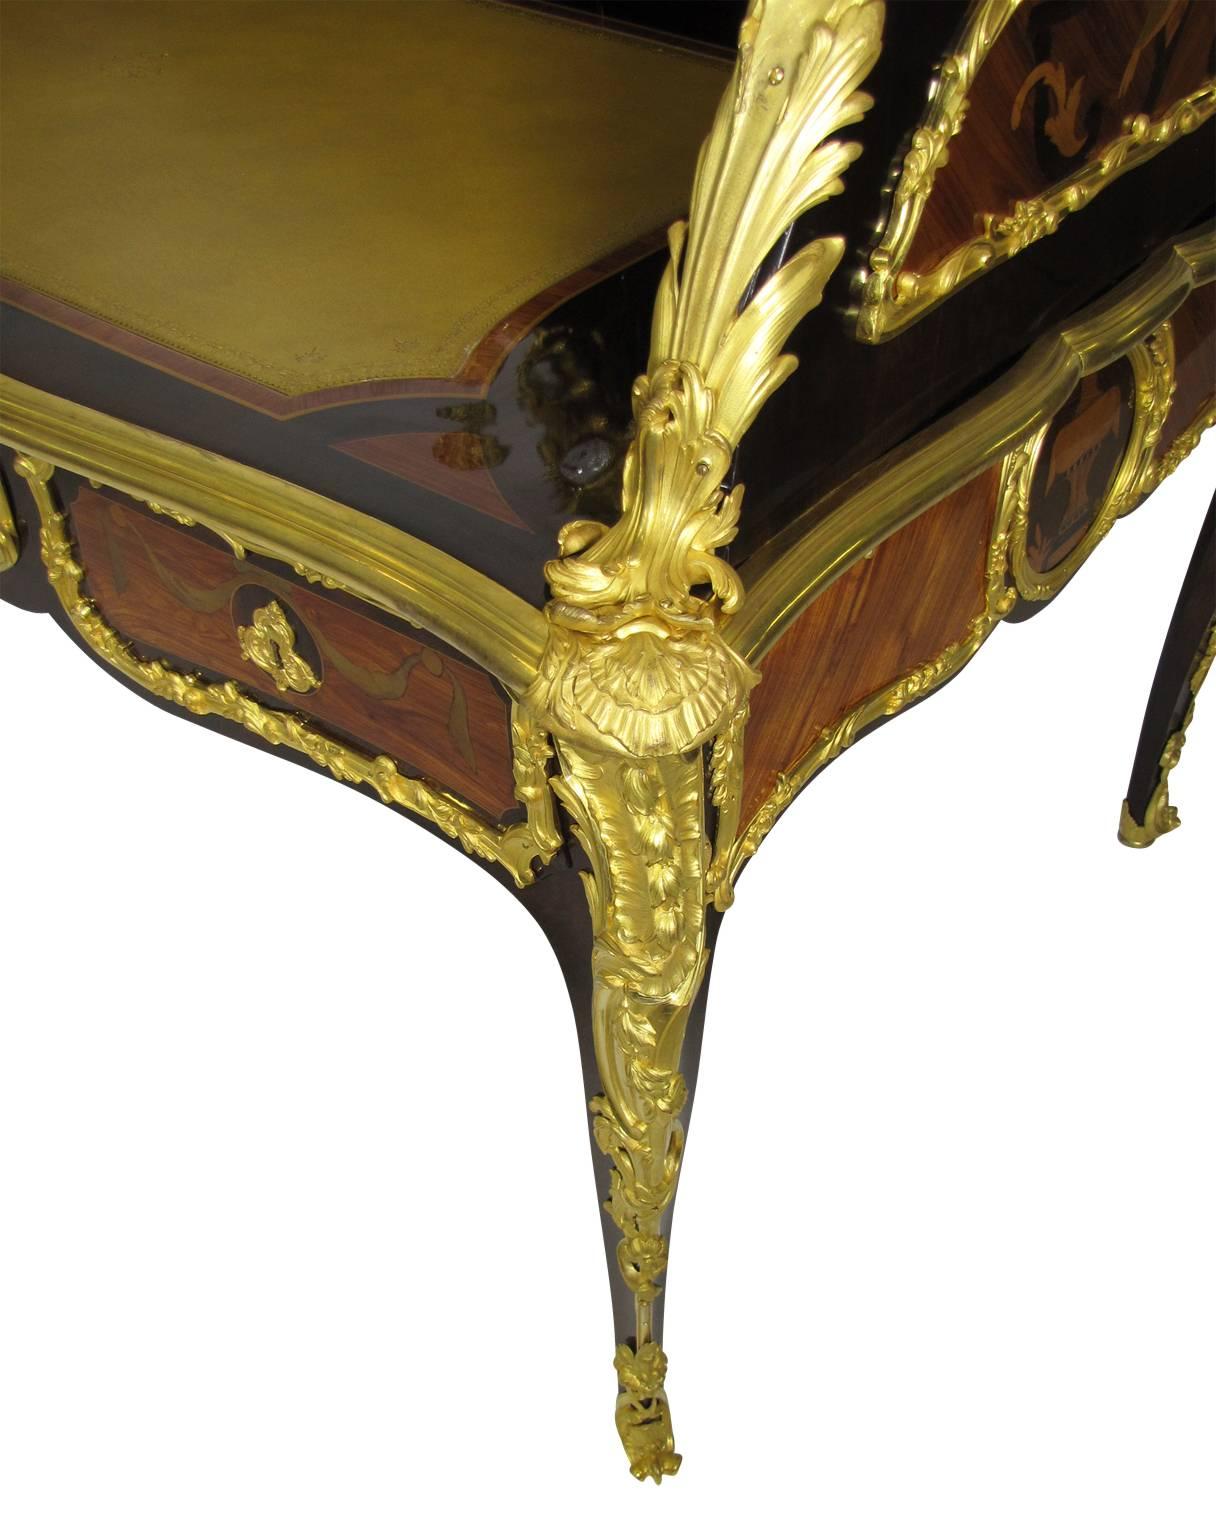 Palastartige französische Kommode im Stil Louis XV des 19. Jahrhunderts mit drei Schubladen und zwei Uhrwerken von Lenoir, Paris, sowie zwei vergoldeten Bronzeleuchtern mit Intarsien aus Tulpenholz. Die gesamte zweifarbige Quecksilbervergoldung ist